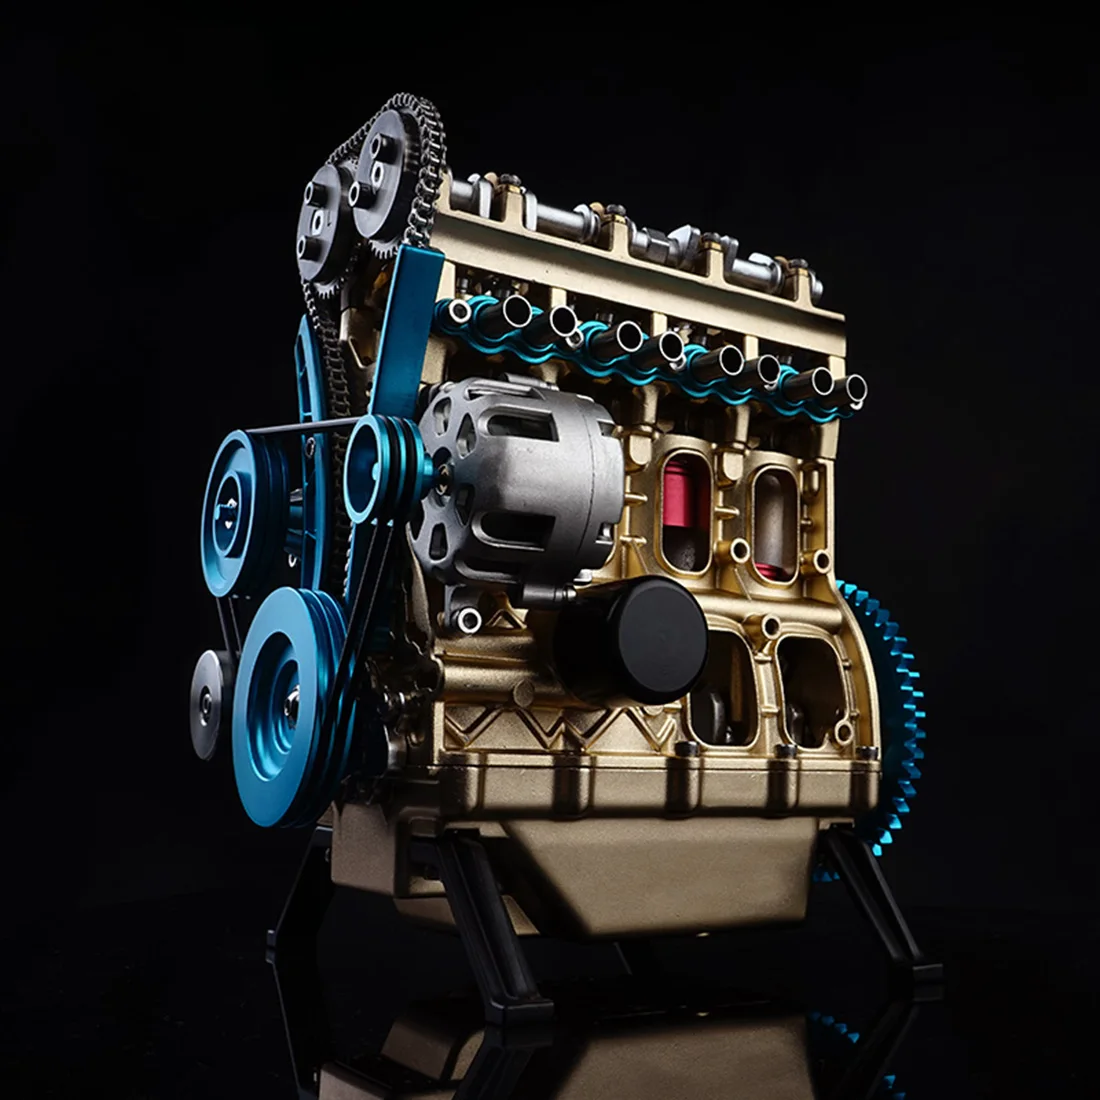 Teching полностью алюминиевая Модель двигателя автомобиля в сборе 4 цилиндра Модель двигателя автомобиля наборы Рождество изысканный подарок для взрослых